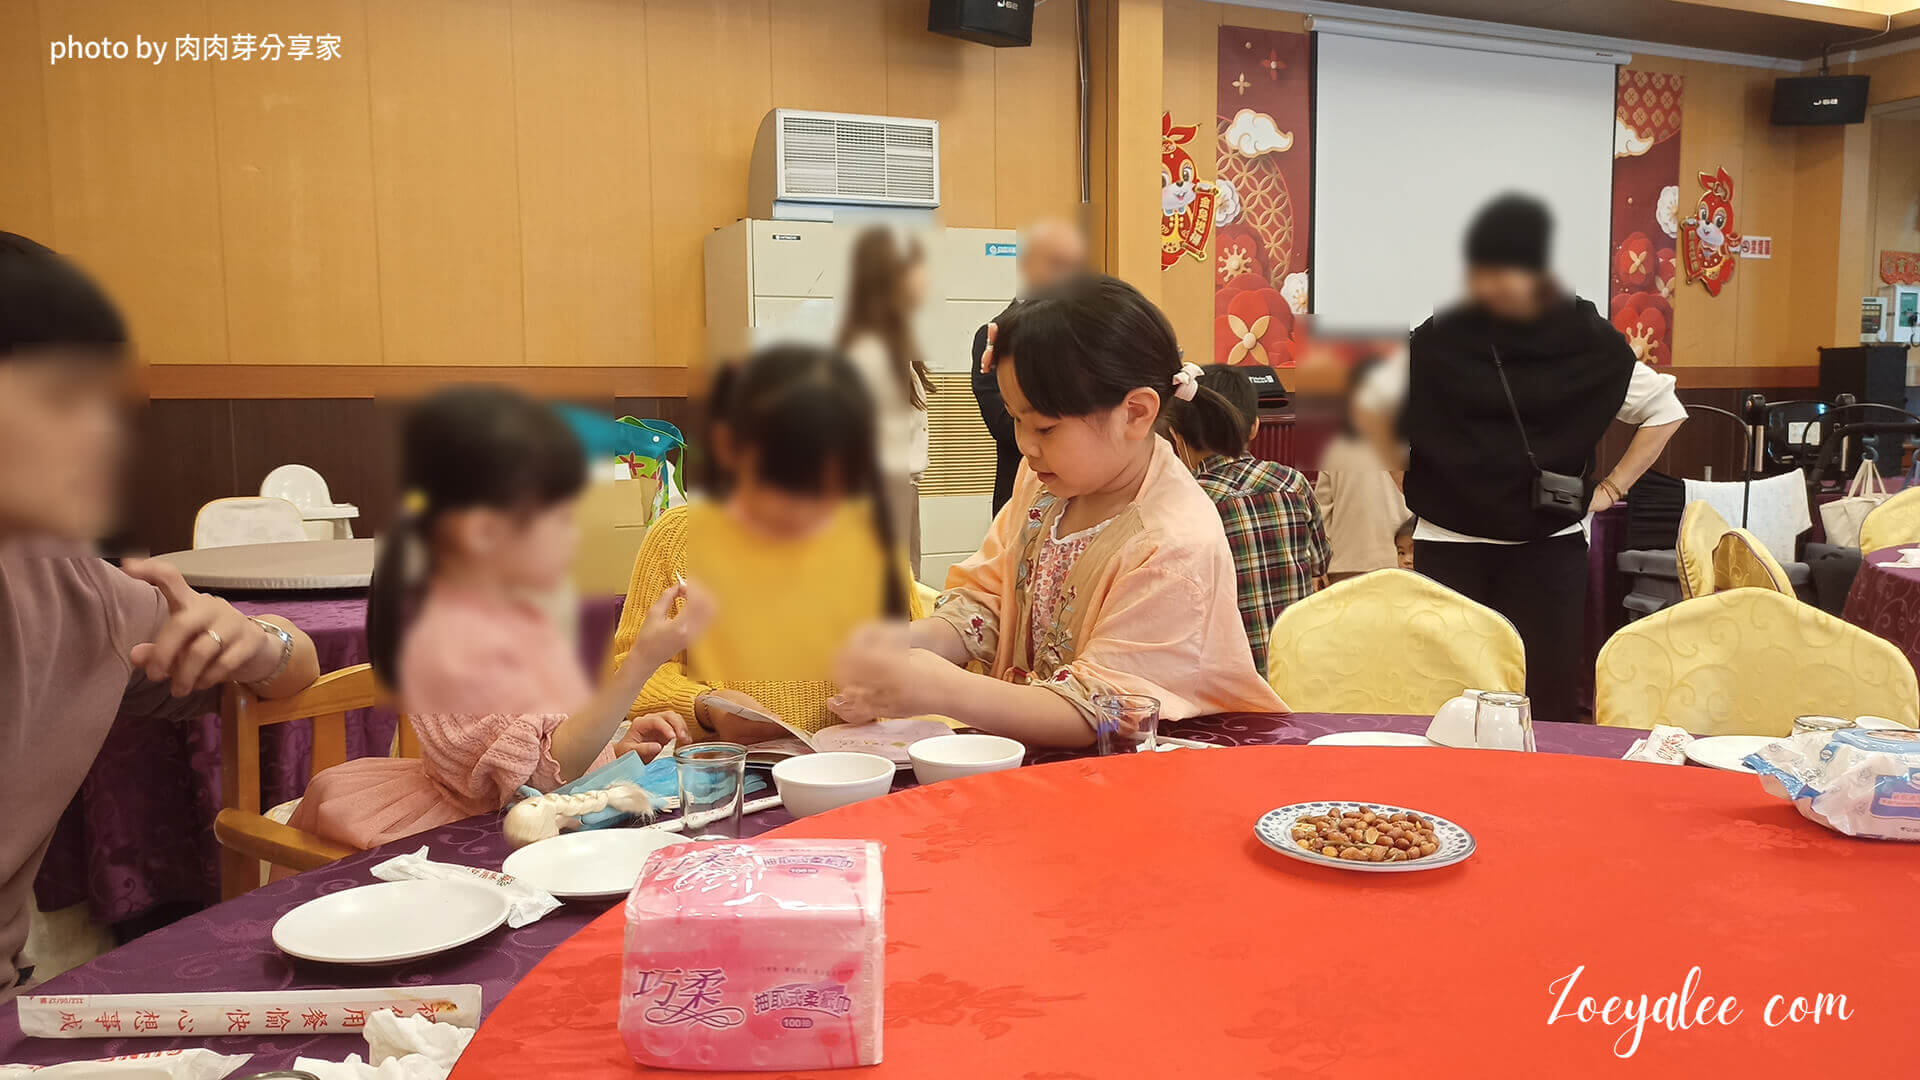 桃園八德,項目包含喜宴,聚餐,外燴的餐廳-上海怹餐廳中餐與彌月宴的小孩子們在嬉戲